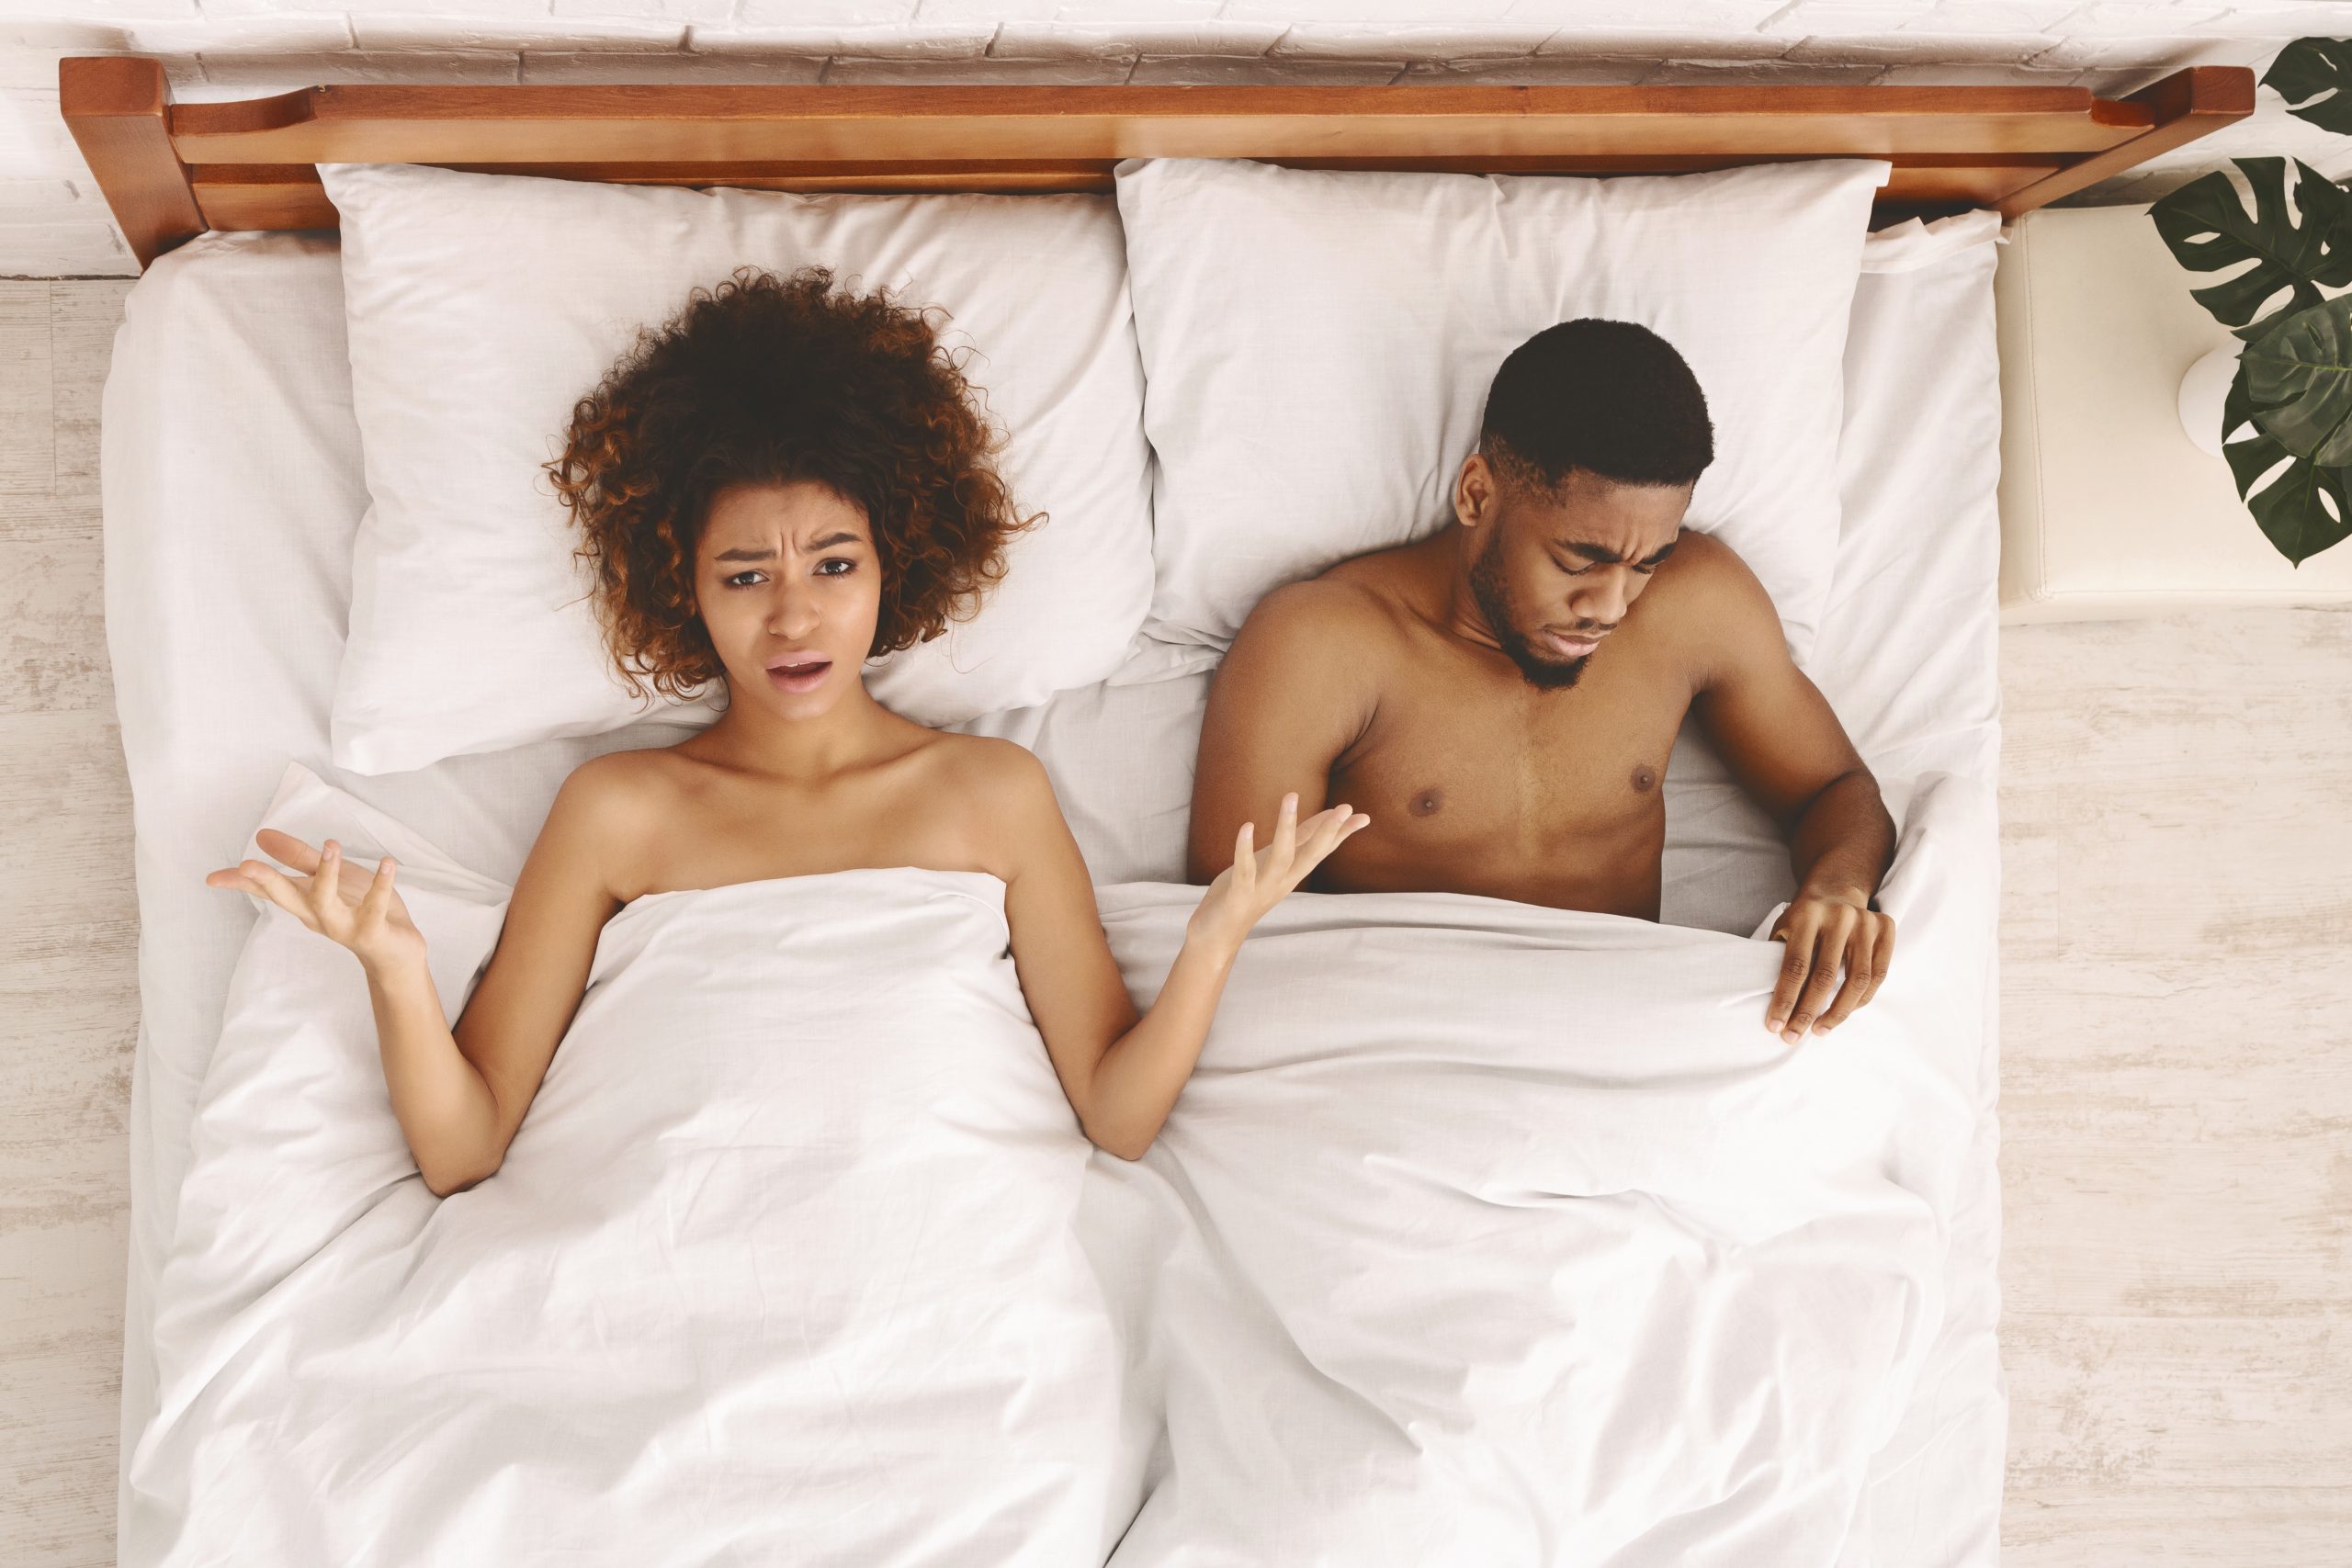 Problema sexual. Mujer negra decepcionada e insatisfecha acostada en la cama, hombre triste mirando bajo la manta, vista superior